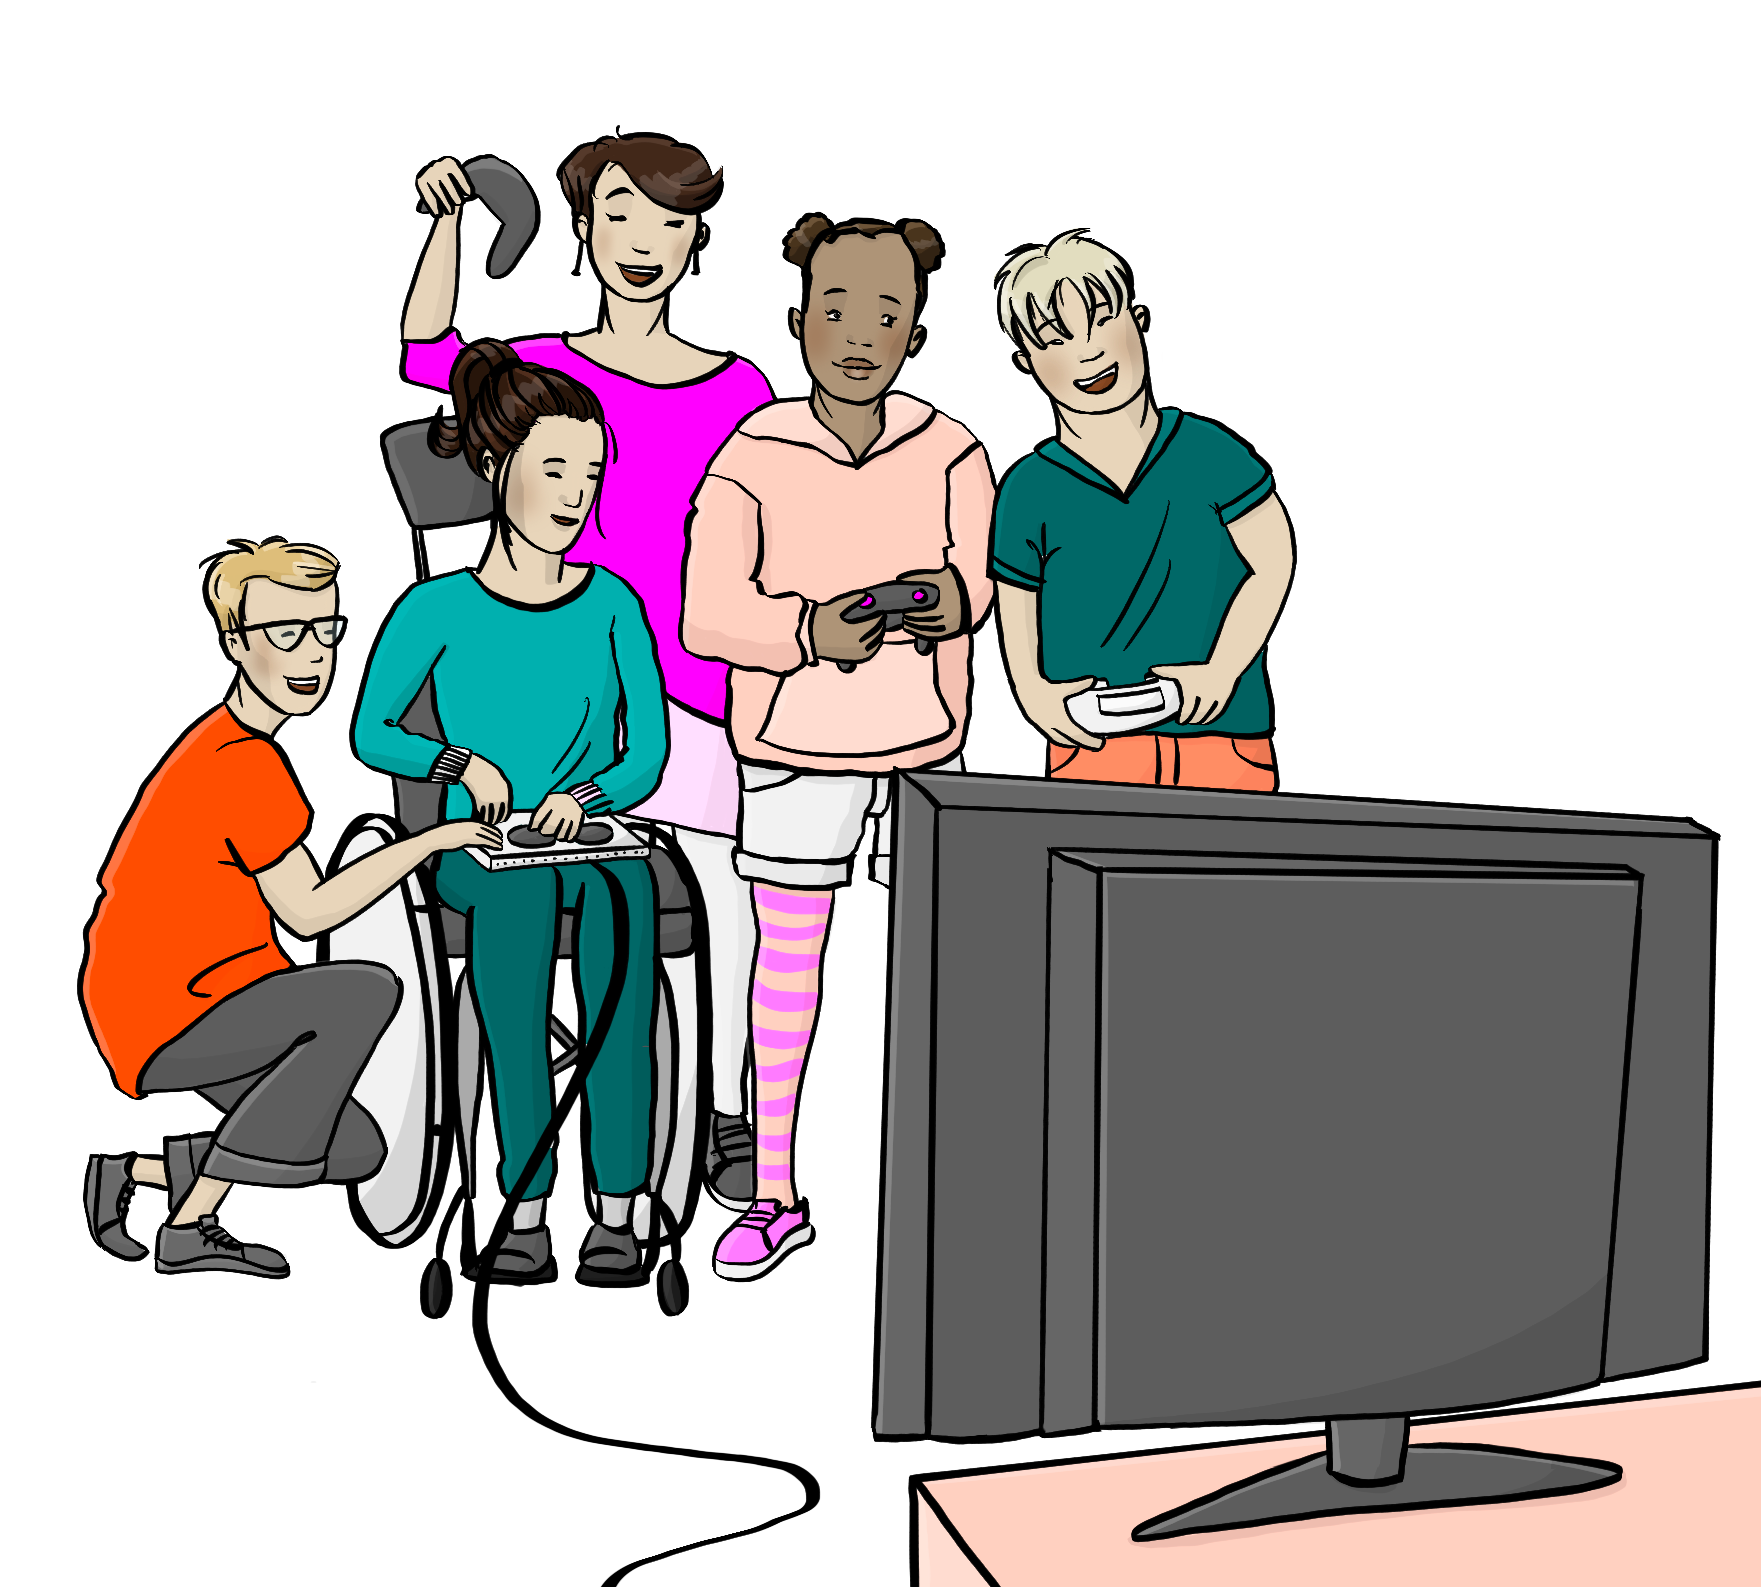 Eine Gruppe Jugendlicher mit verschiedenen Hautfarben. Sie haben Controller für eine Spielkonsole in den Händen. Ein Mädchen im Rollstuhl hat einen Controller mit extra großen Knöpfen. Im Vordergrund steht ein Fernseher.